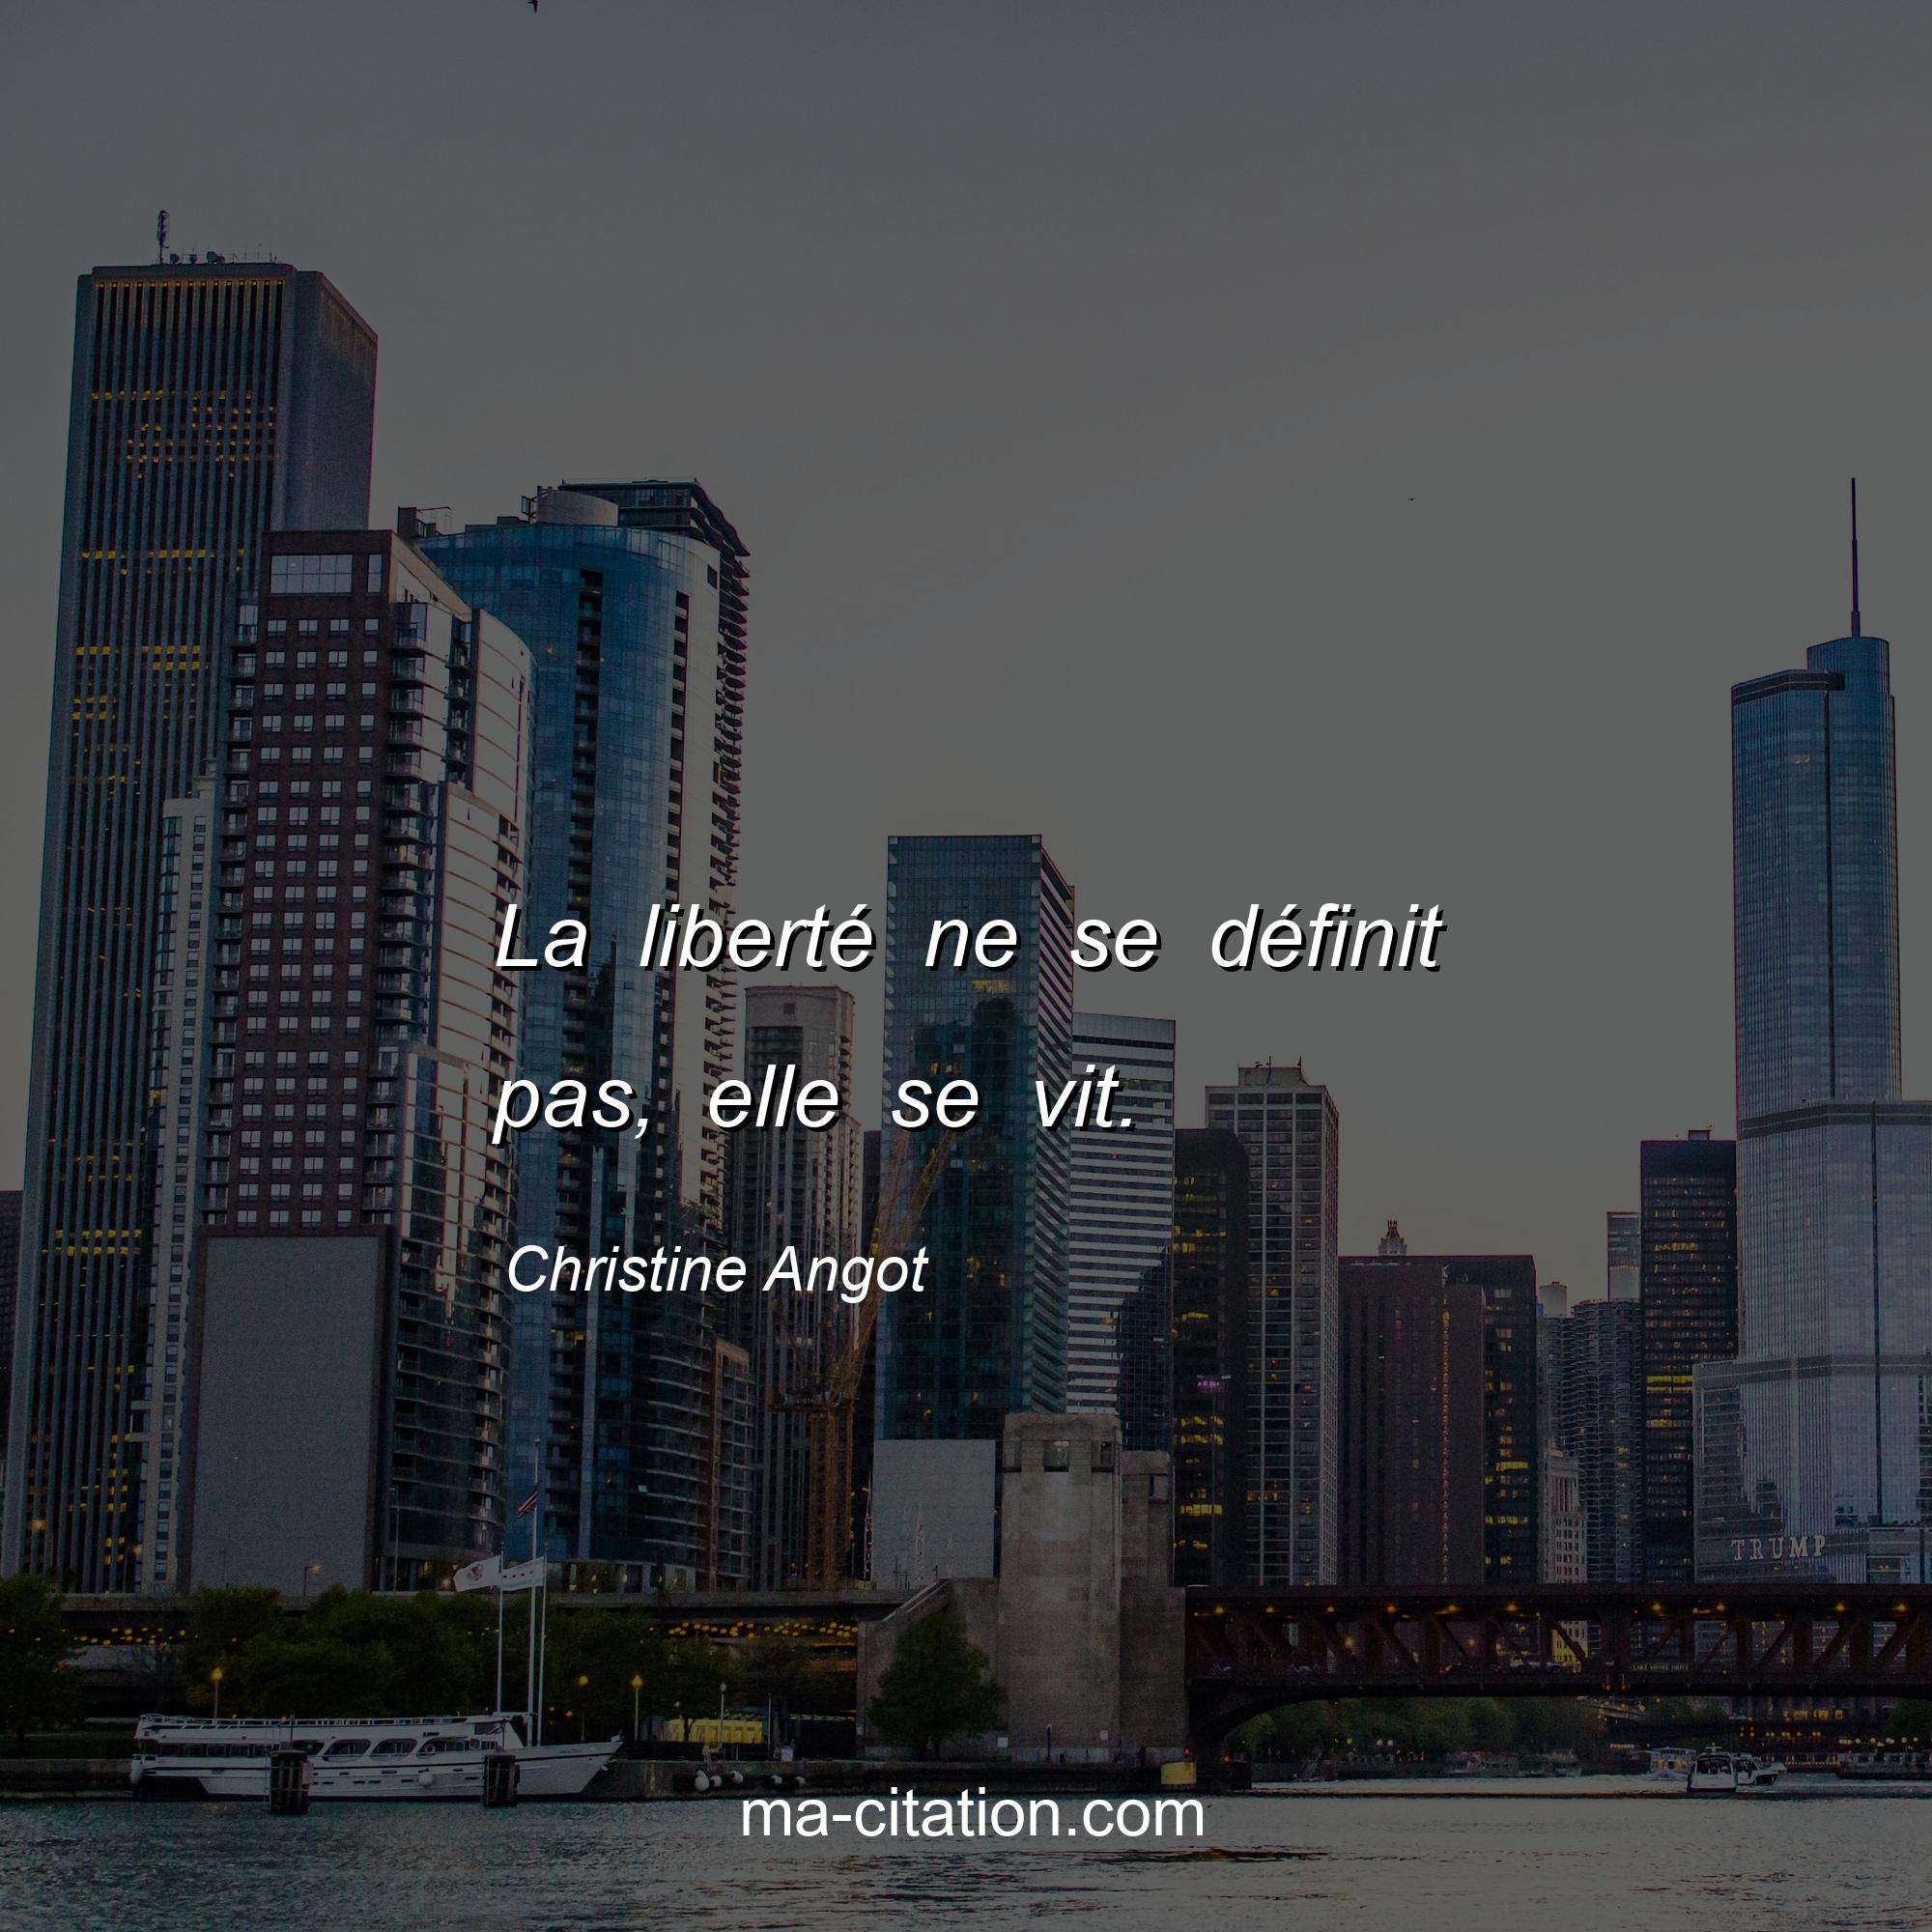 Christine Angot : La liberté ne se définit pas, elle se vit.